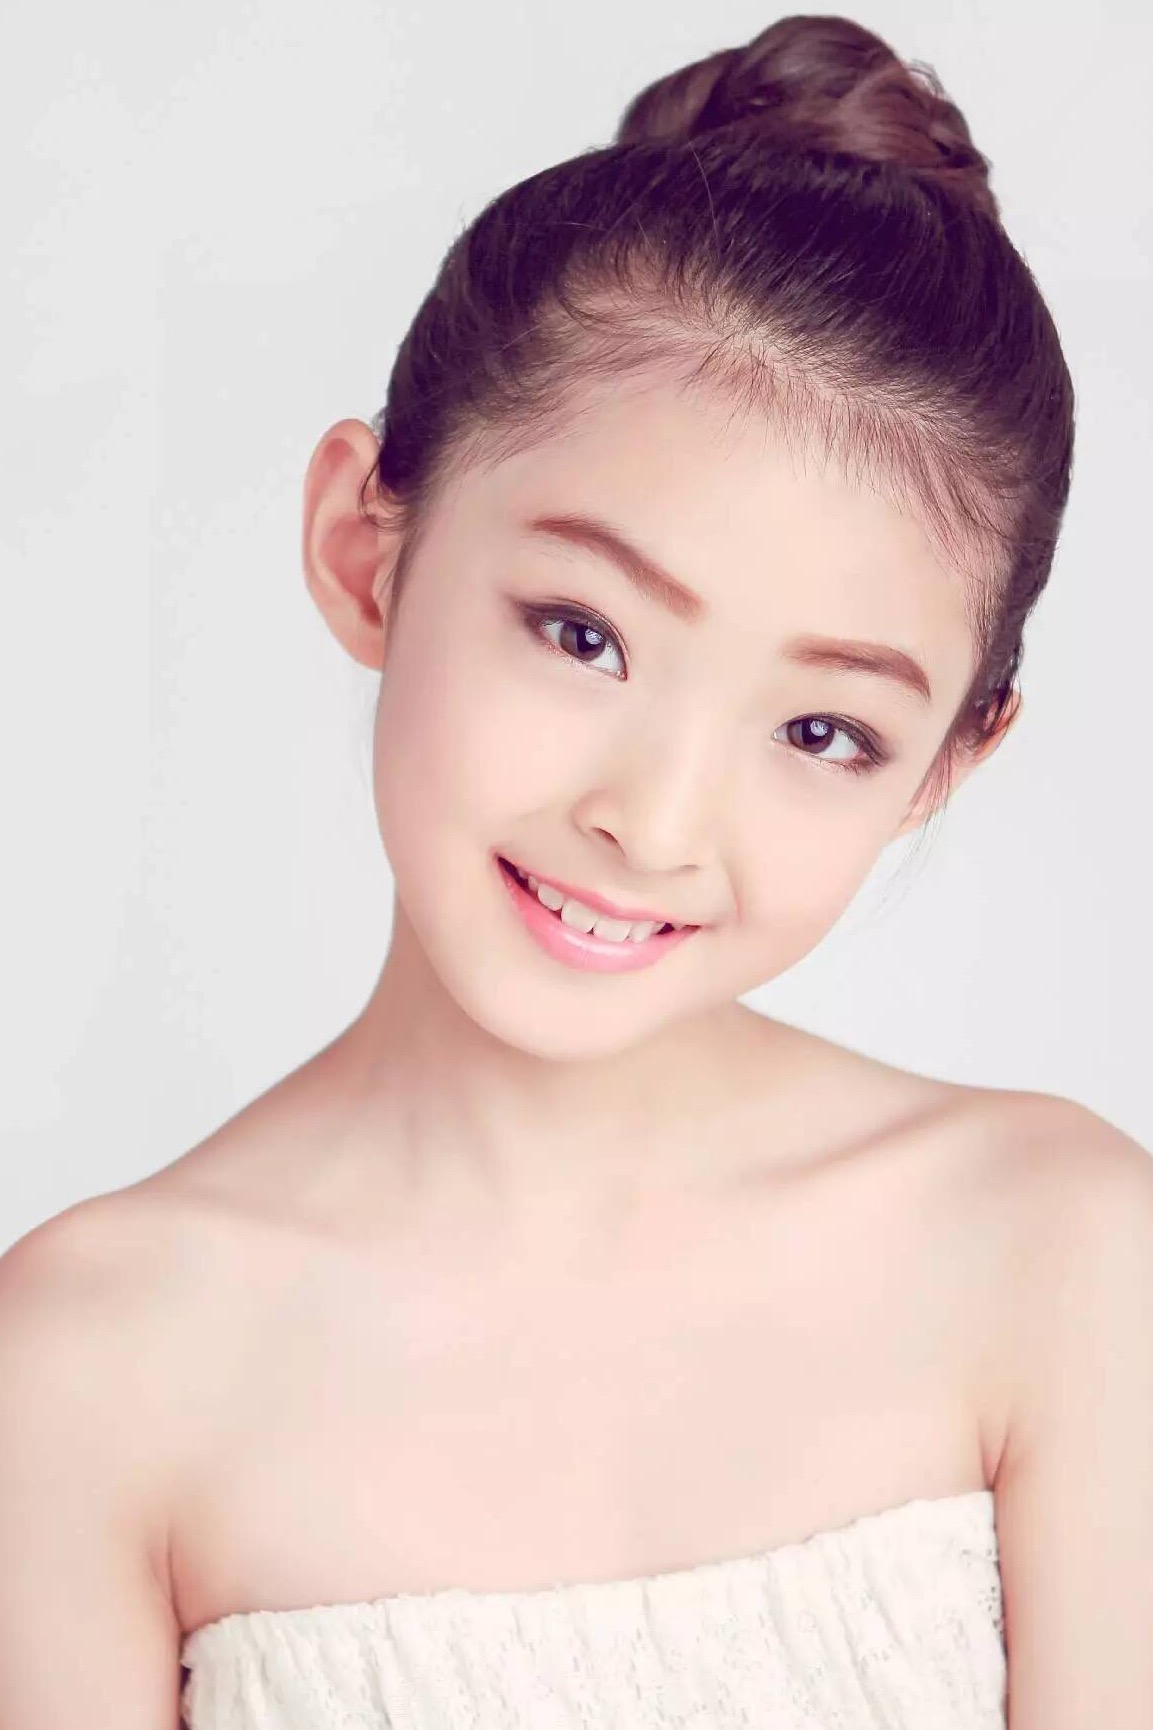 蒋韵兮才貌兼备,有中国最美女童星第一天然美女等美誉